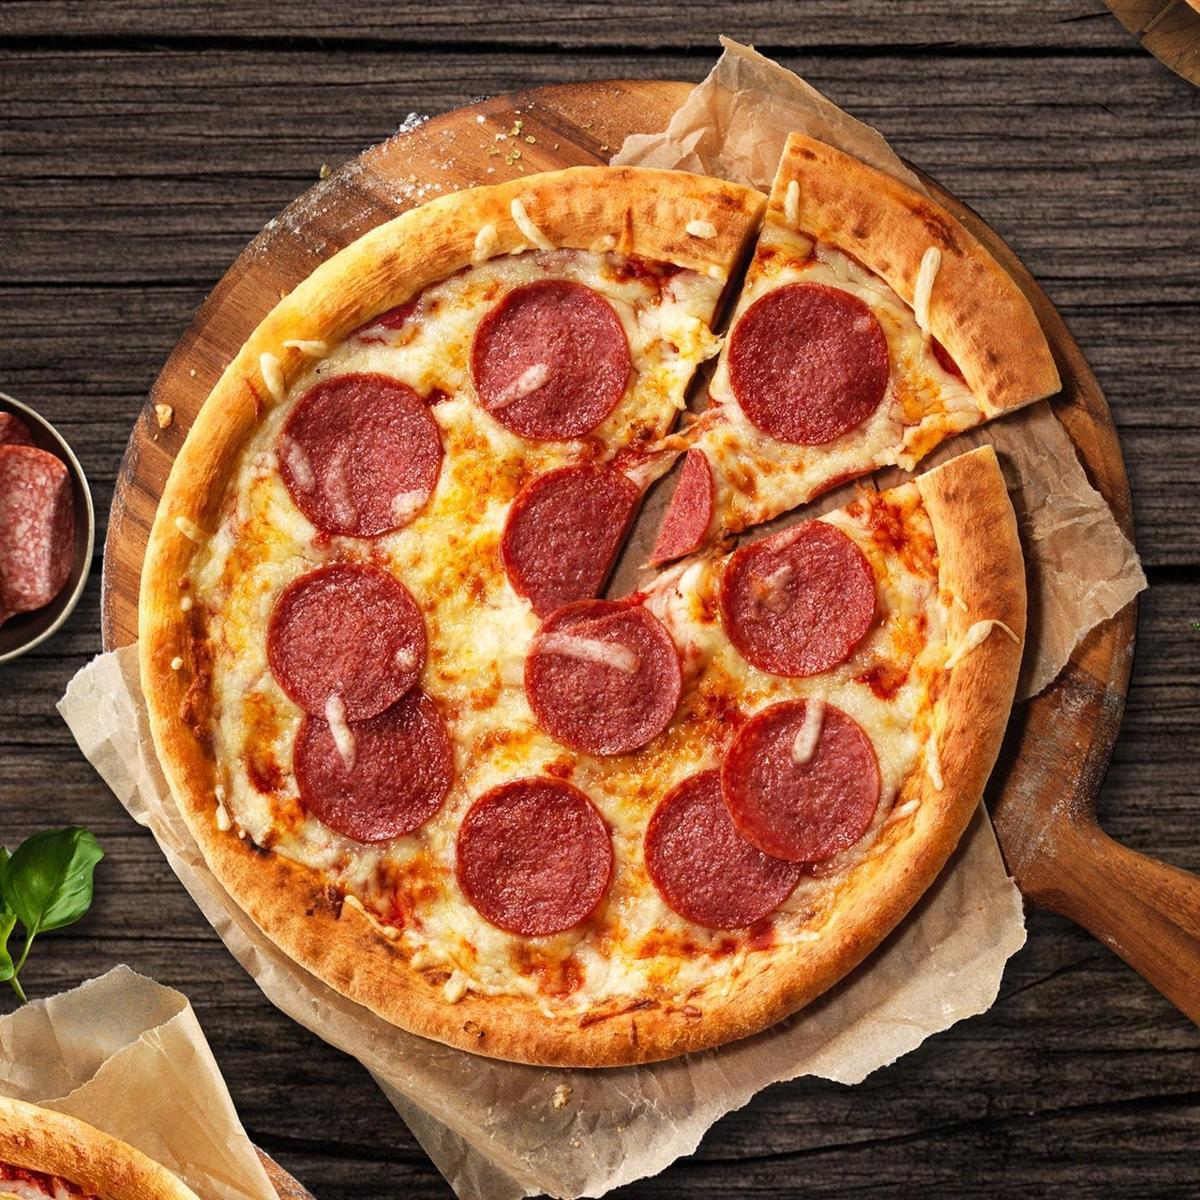 01781-DE-pizza-con-salame-pic1.jpg-W1400